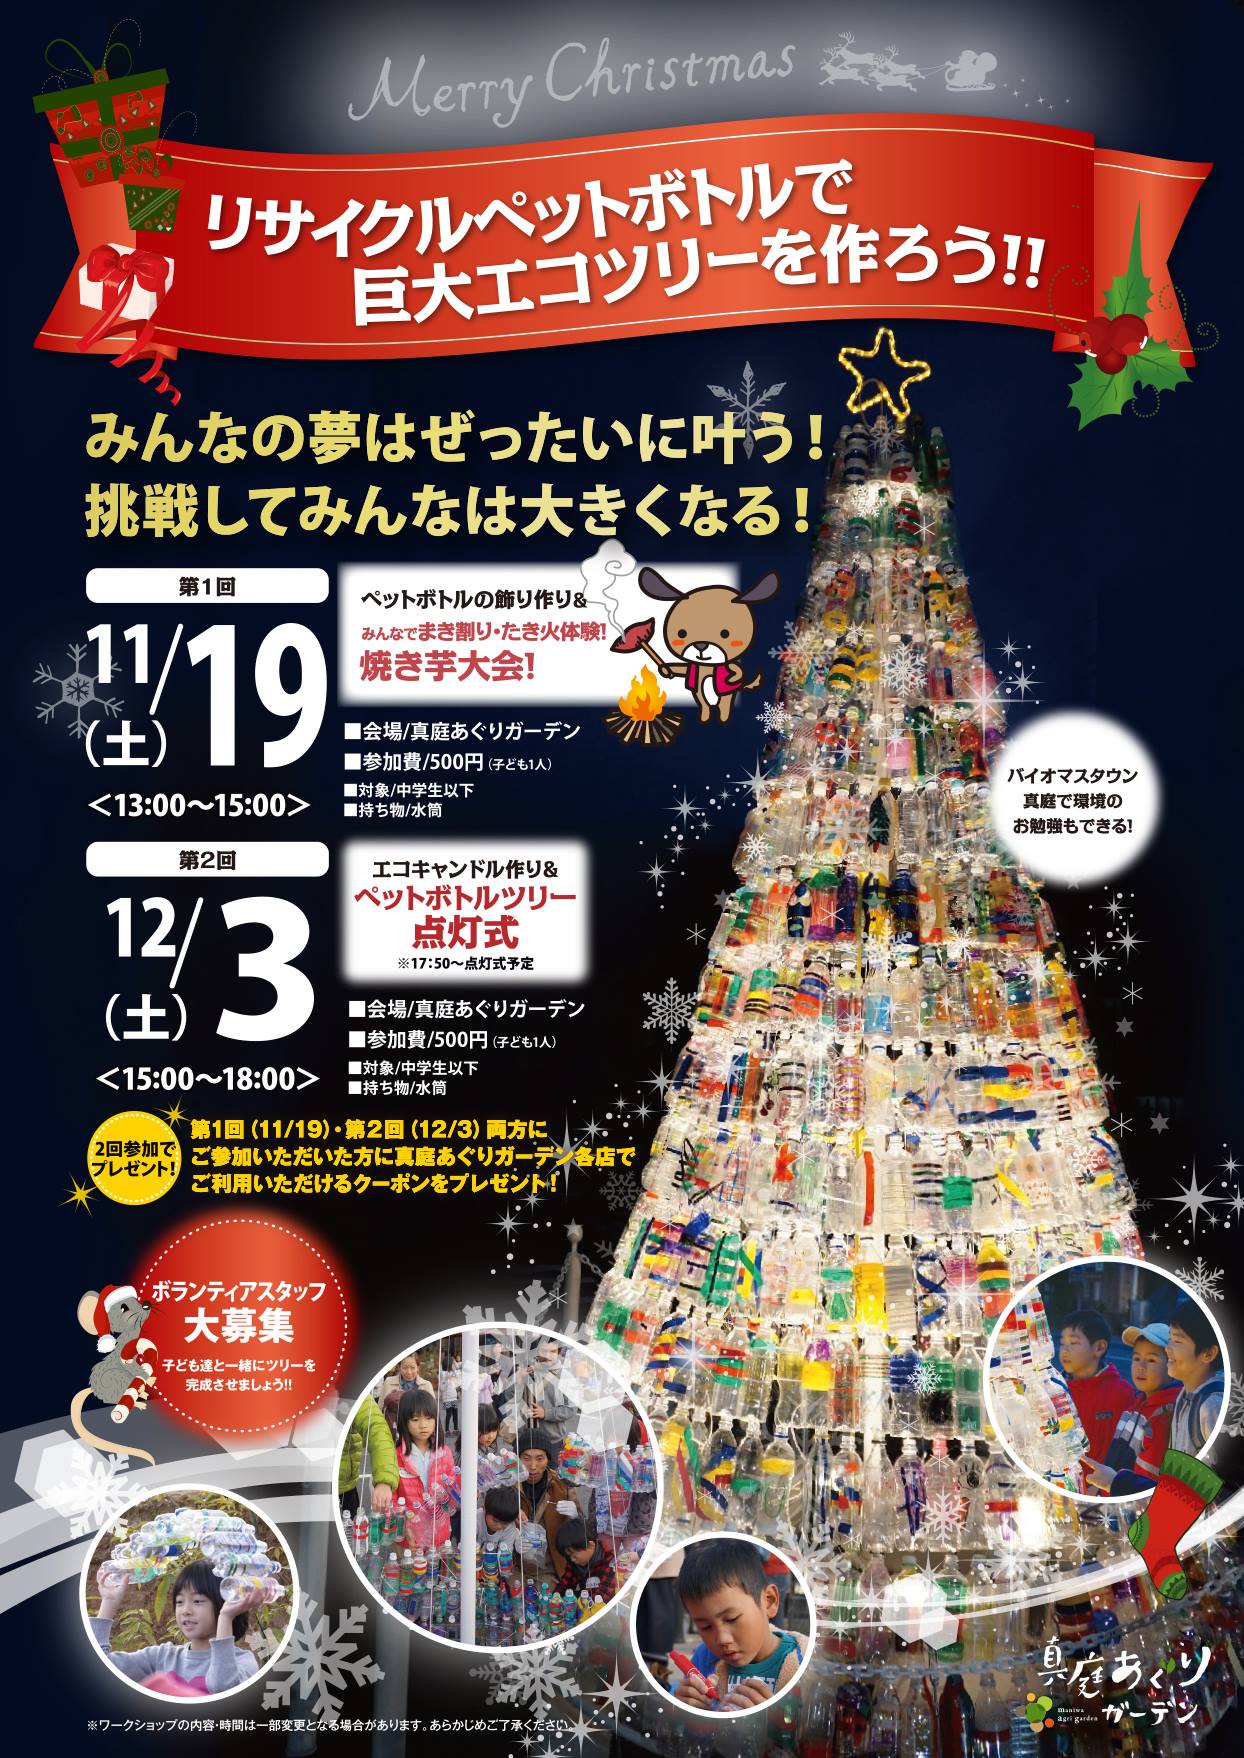 16 11 19 12 3 ペットボトルでクリスマスツリー作り 子どもとおでかけ 岡山イベント情報